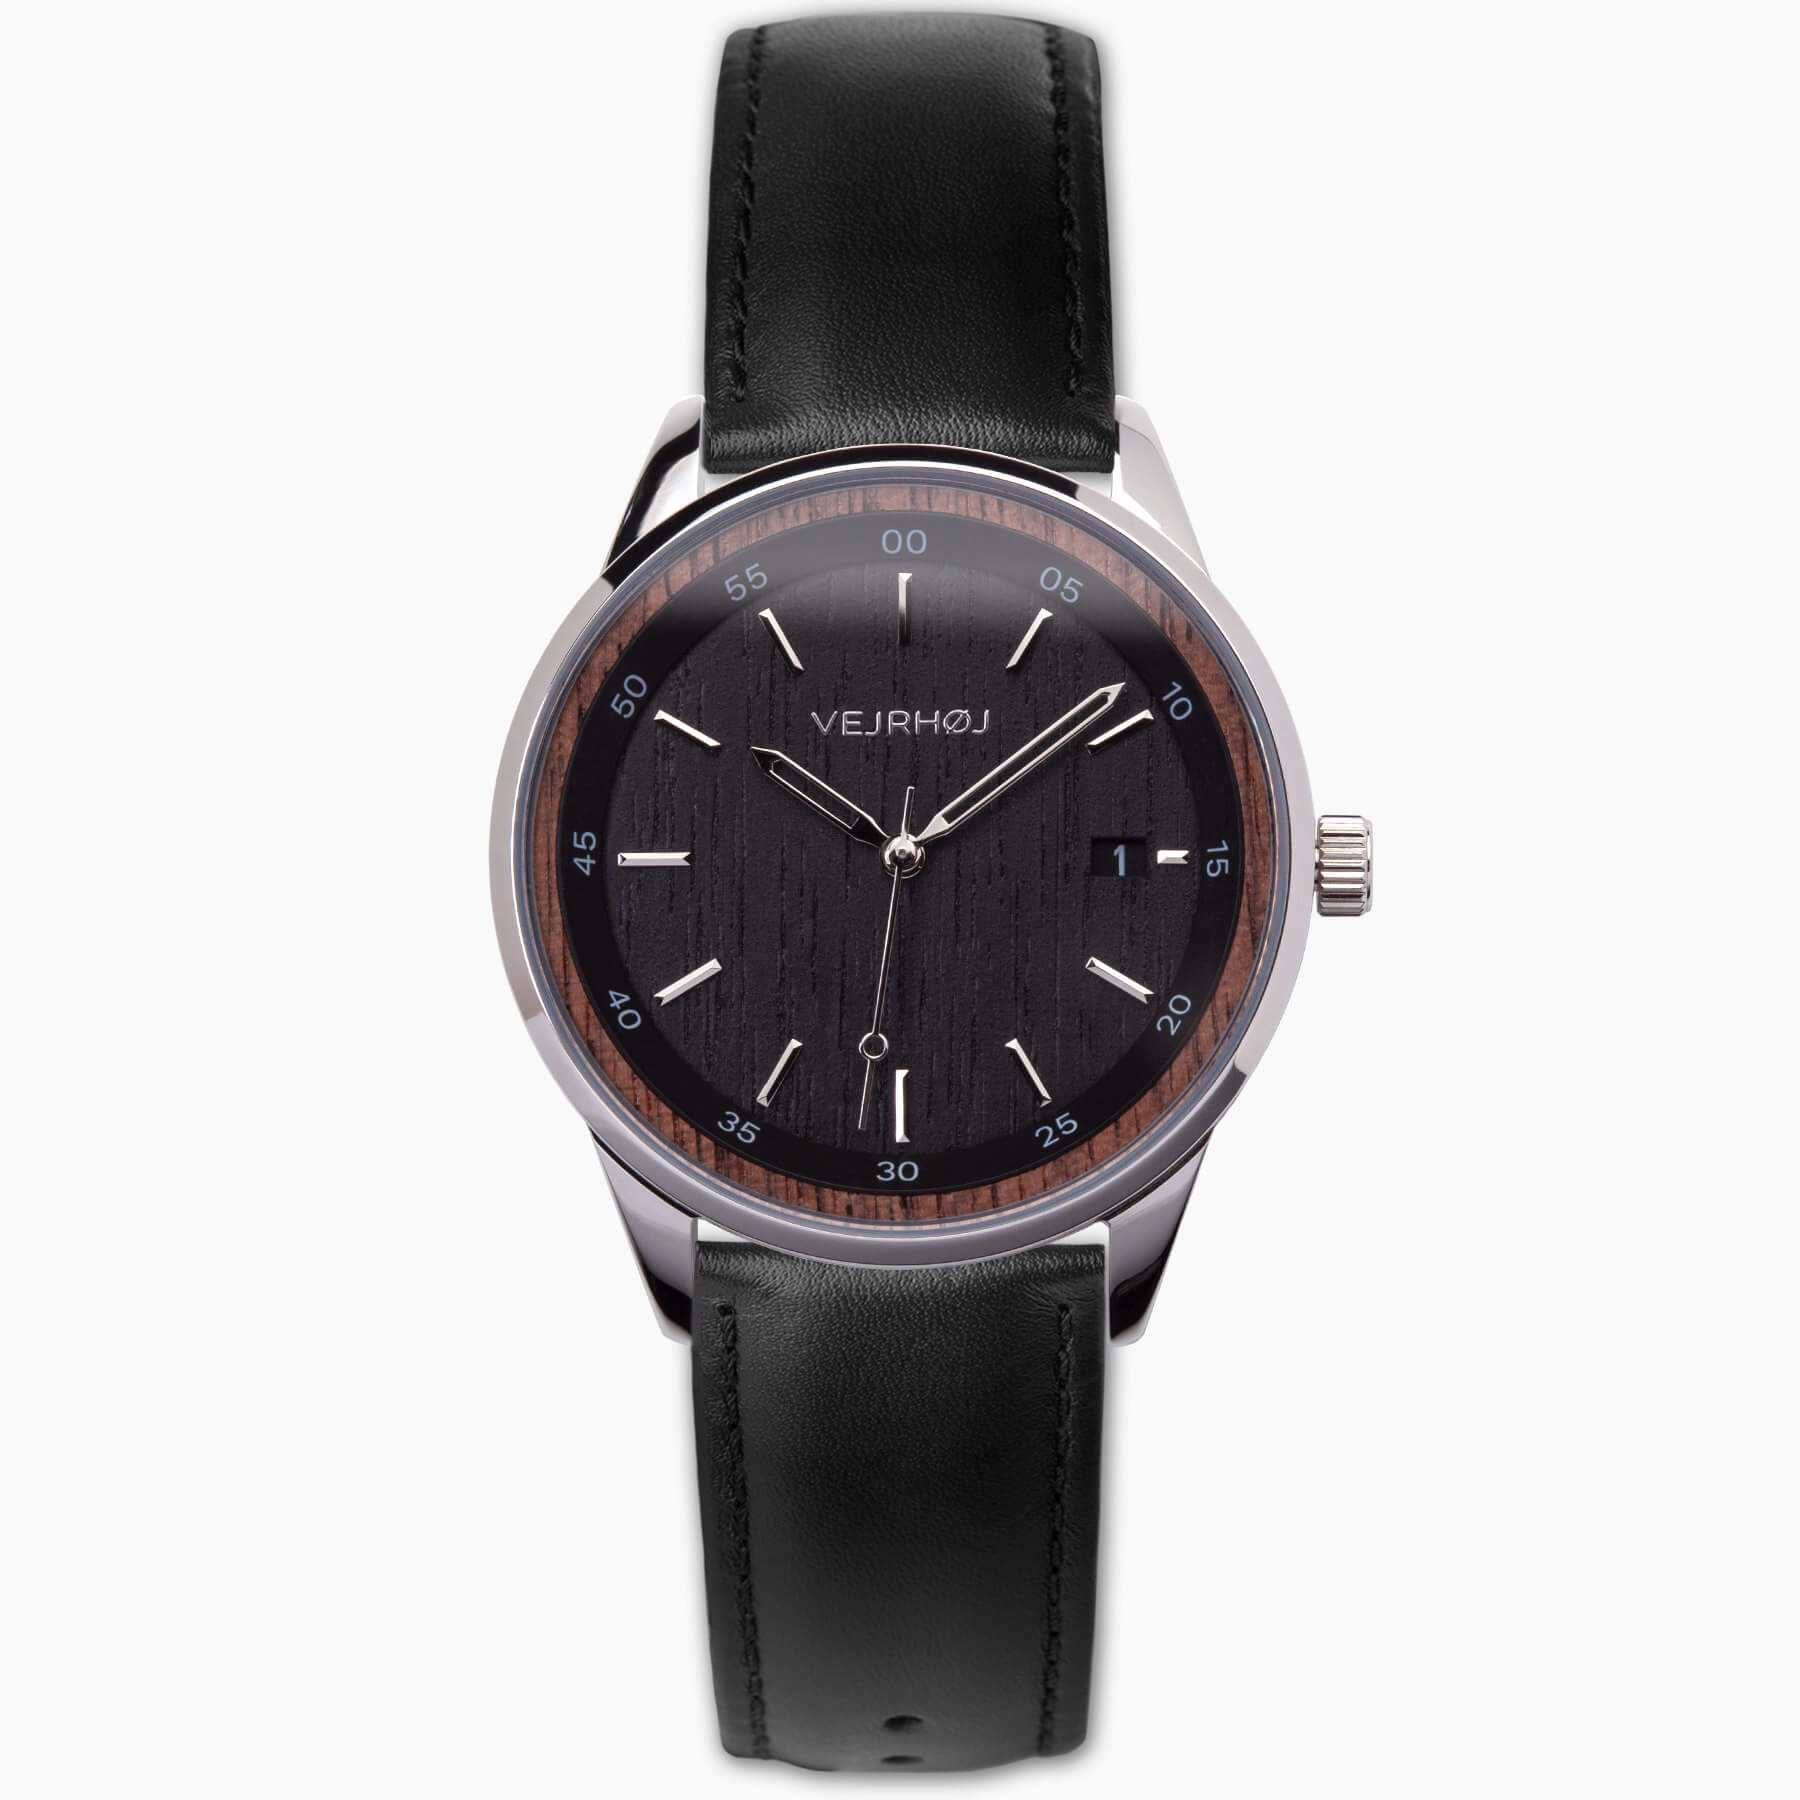 漆黒の自動巻式腕時計